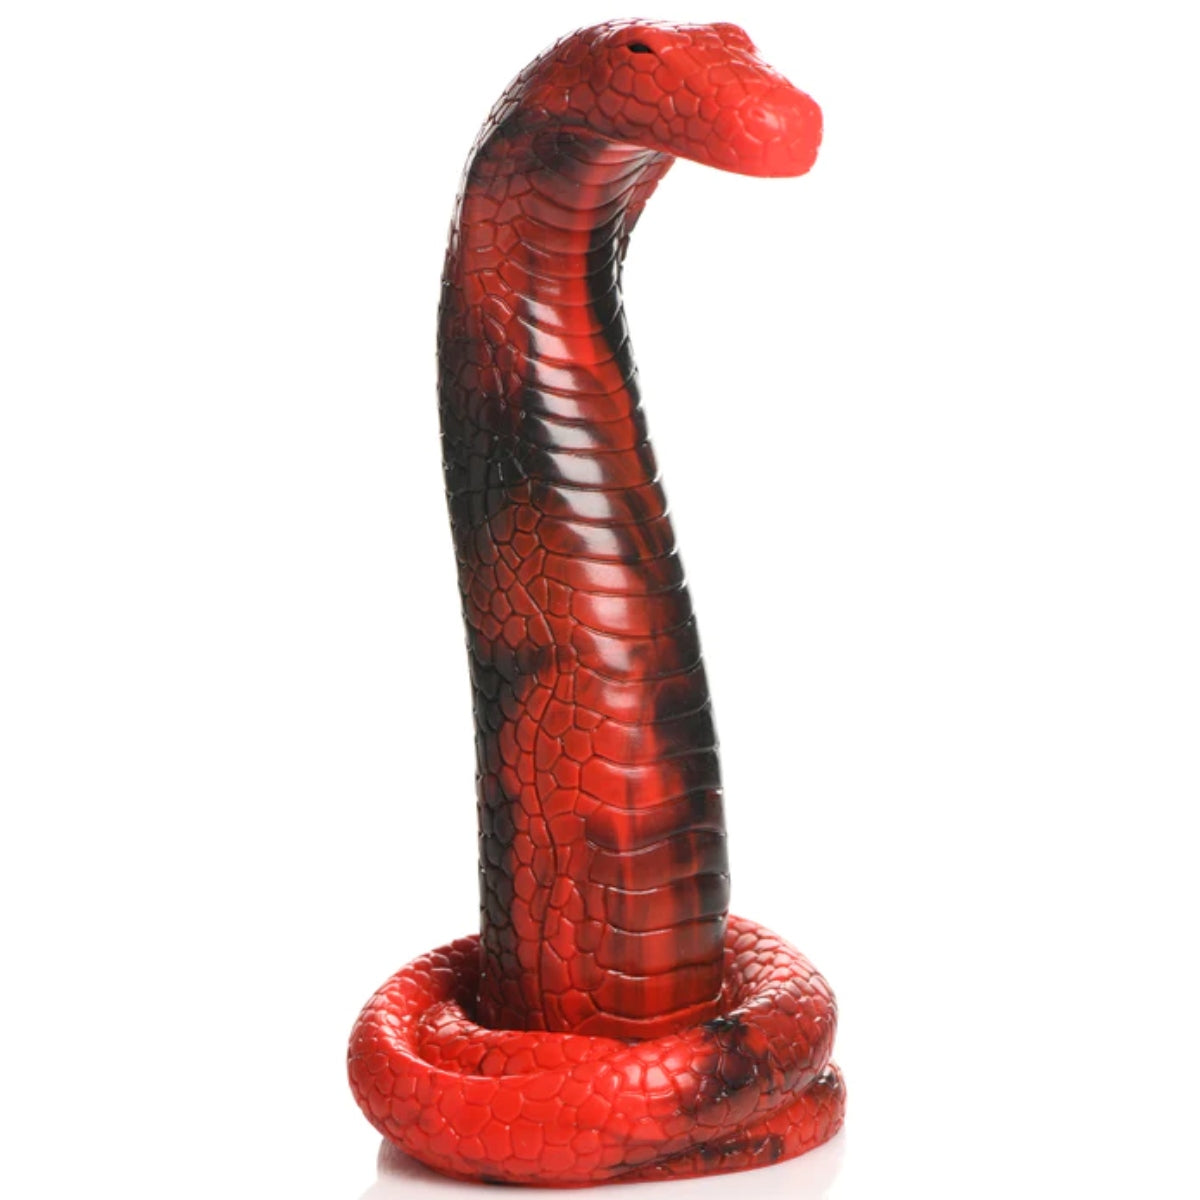 Creature Cocks | King Cobra Silicone Dildo – 8.5 inch